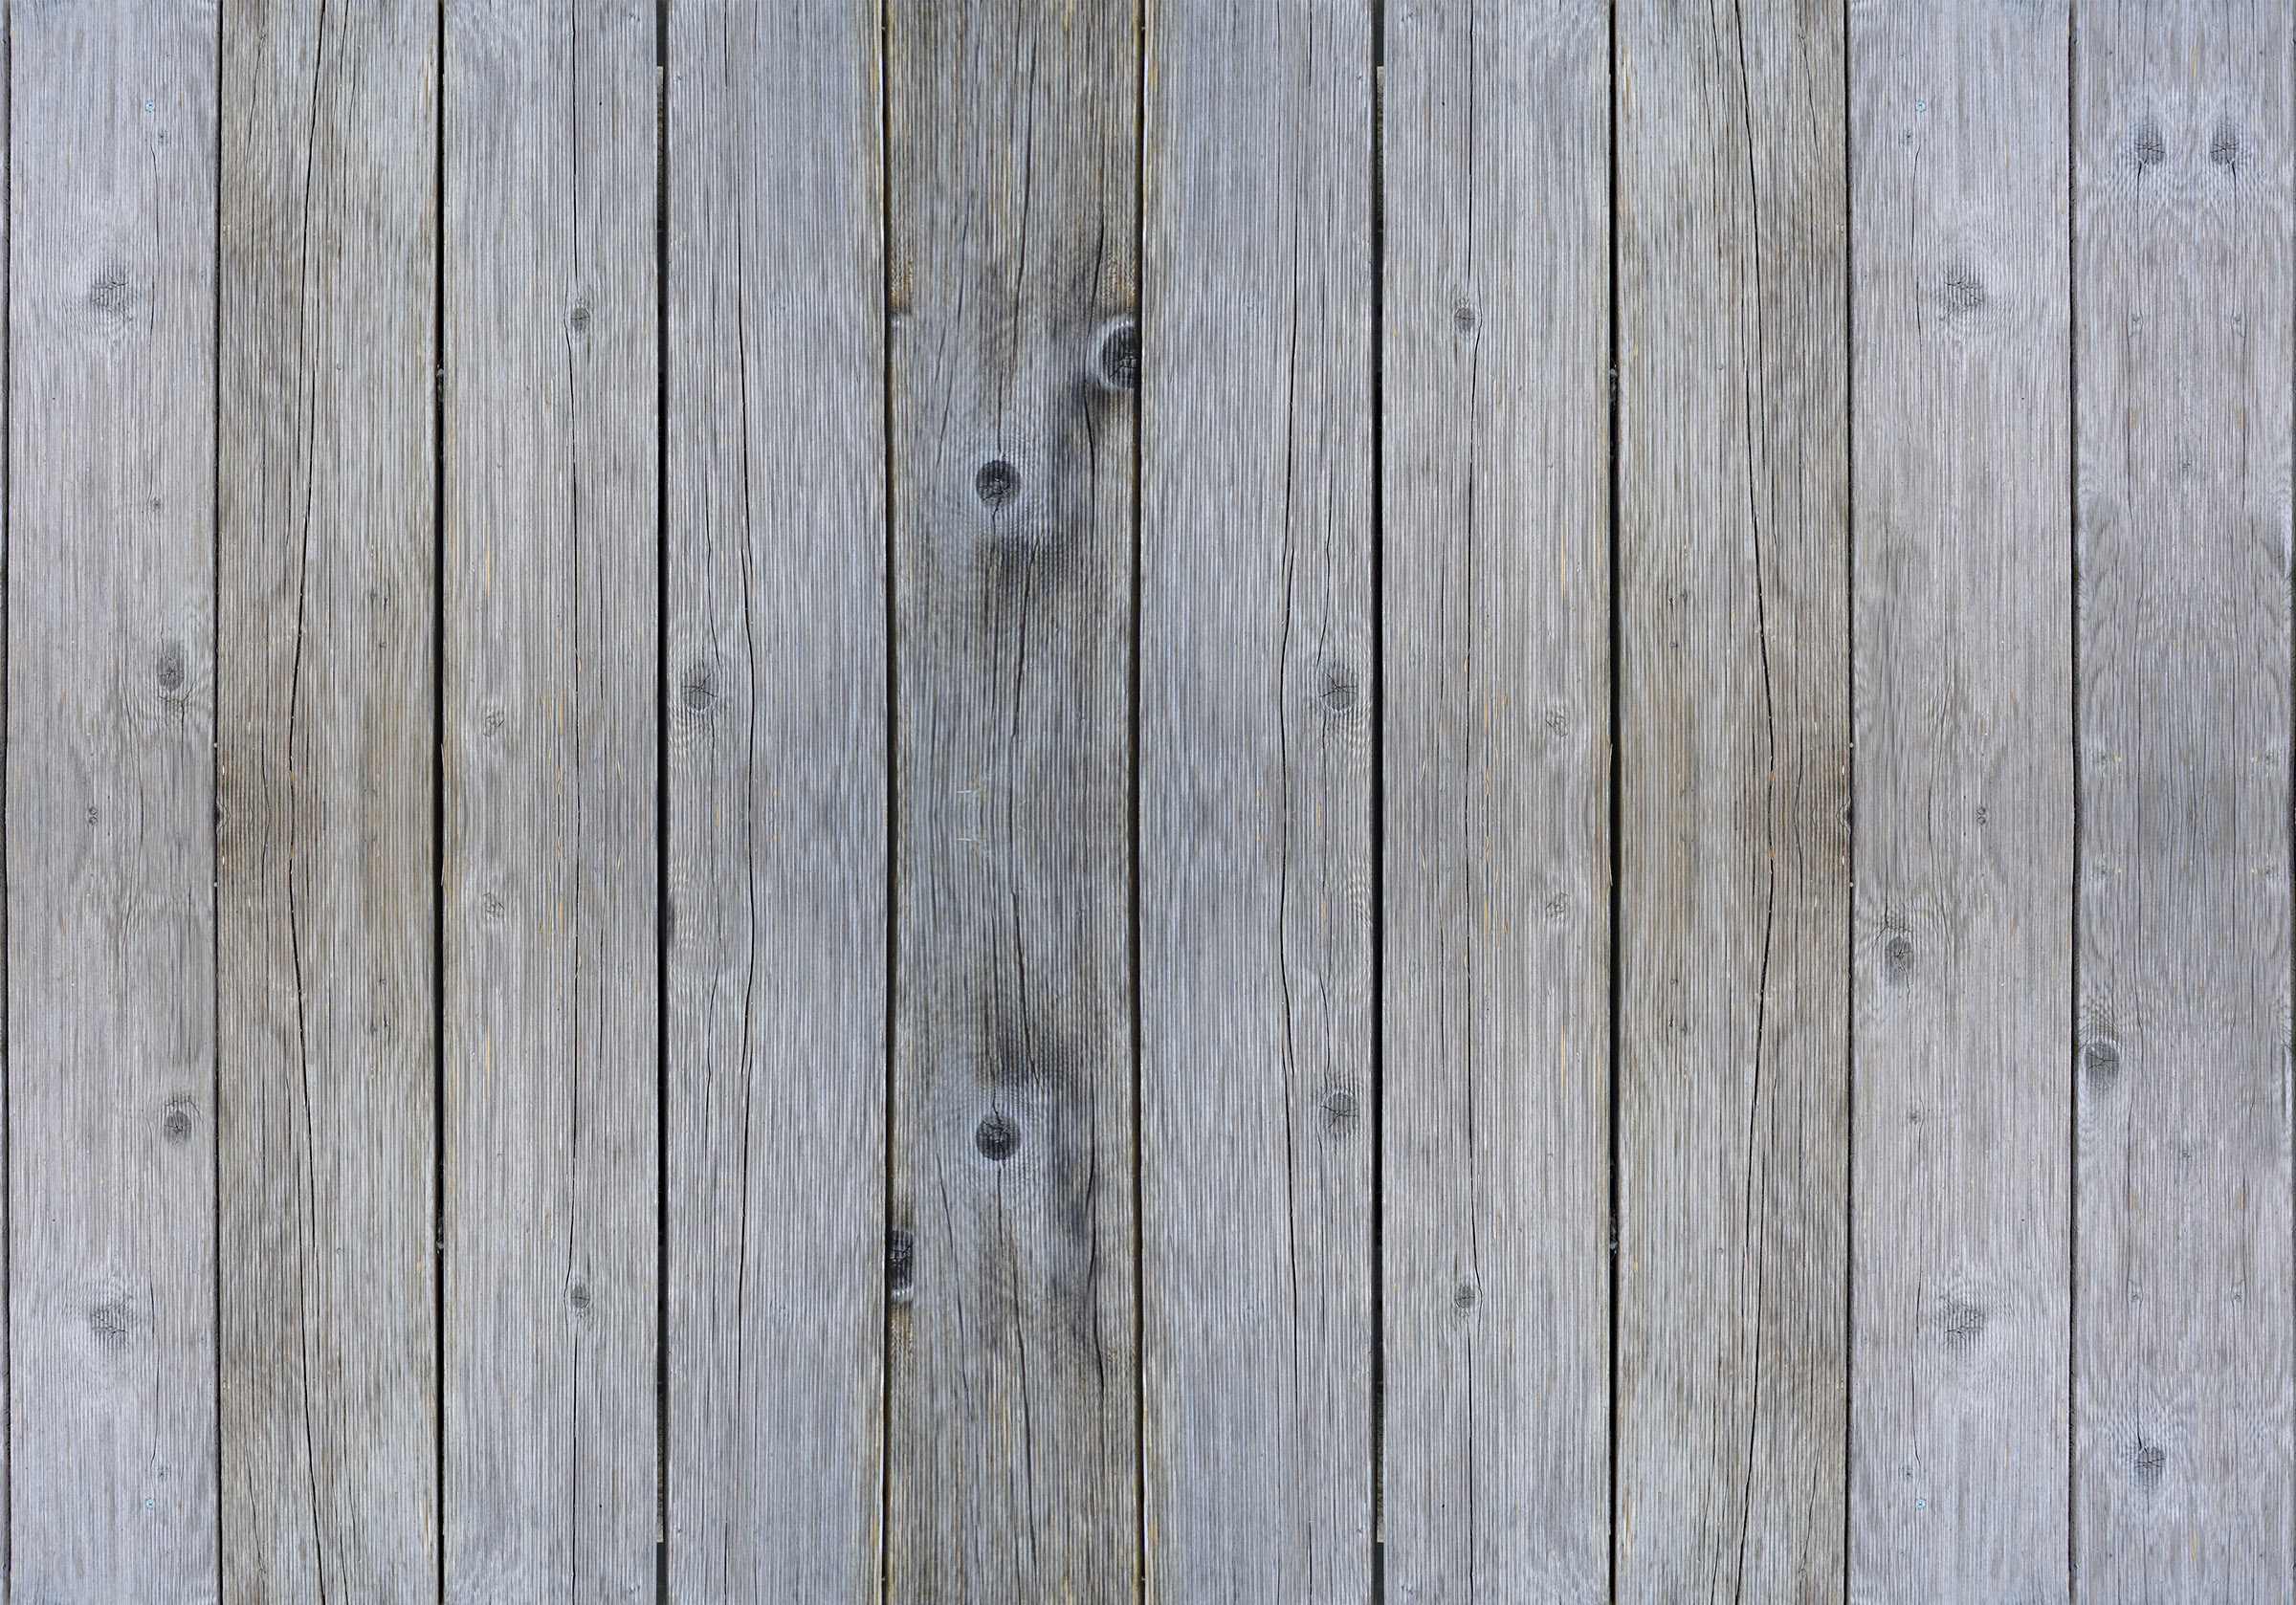 Фото деревянная конструкция твёрдая древесина доска - бесплатные картинки на Fonwall